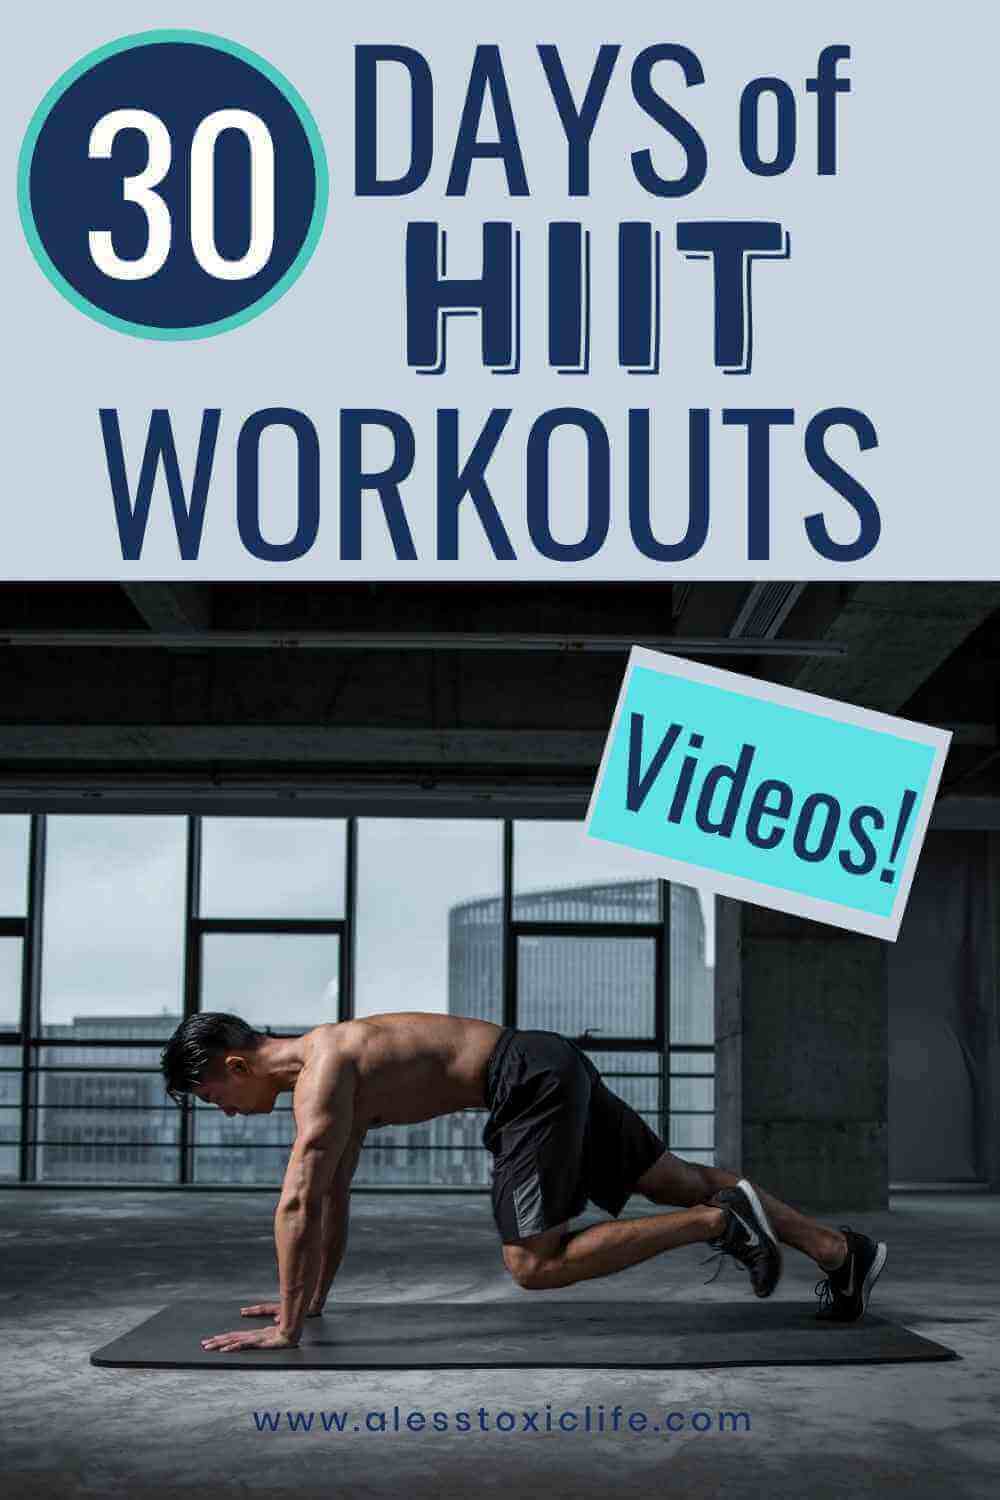 30 Days of HIIT Workout VIdeos - redspotdesign.com 